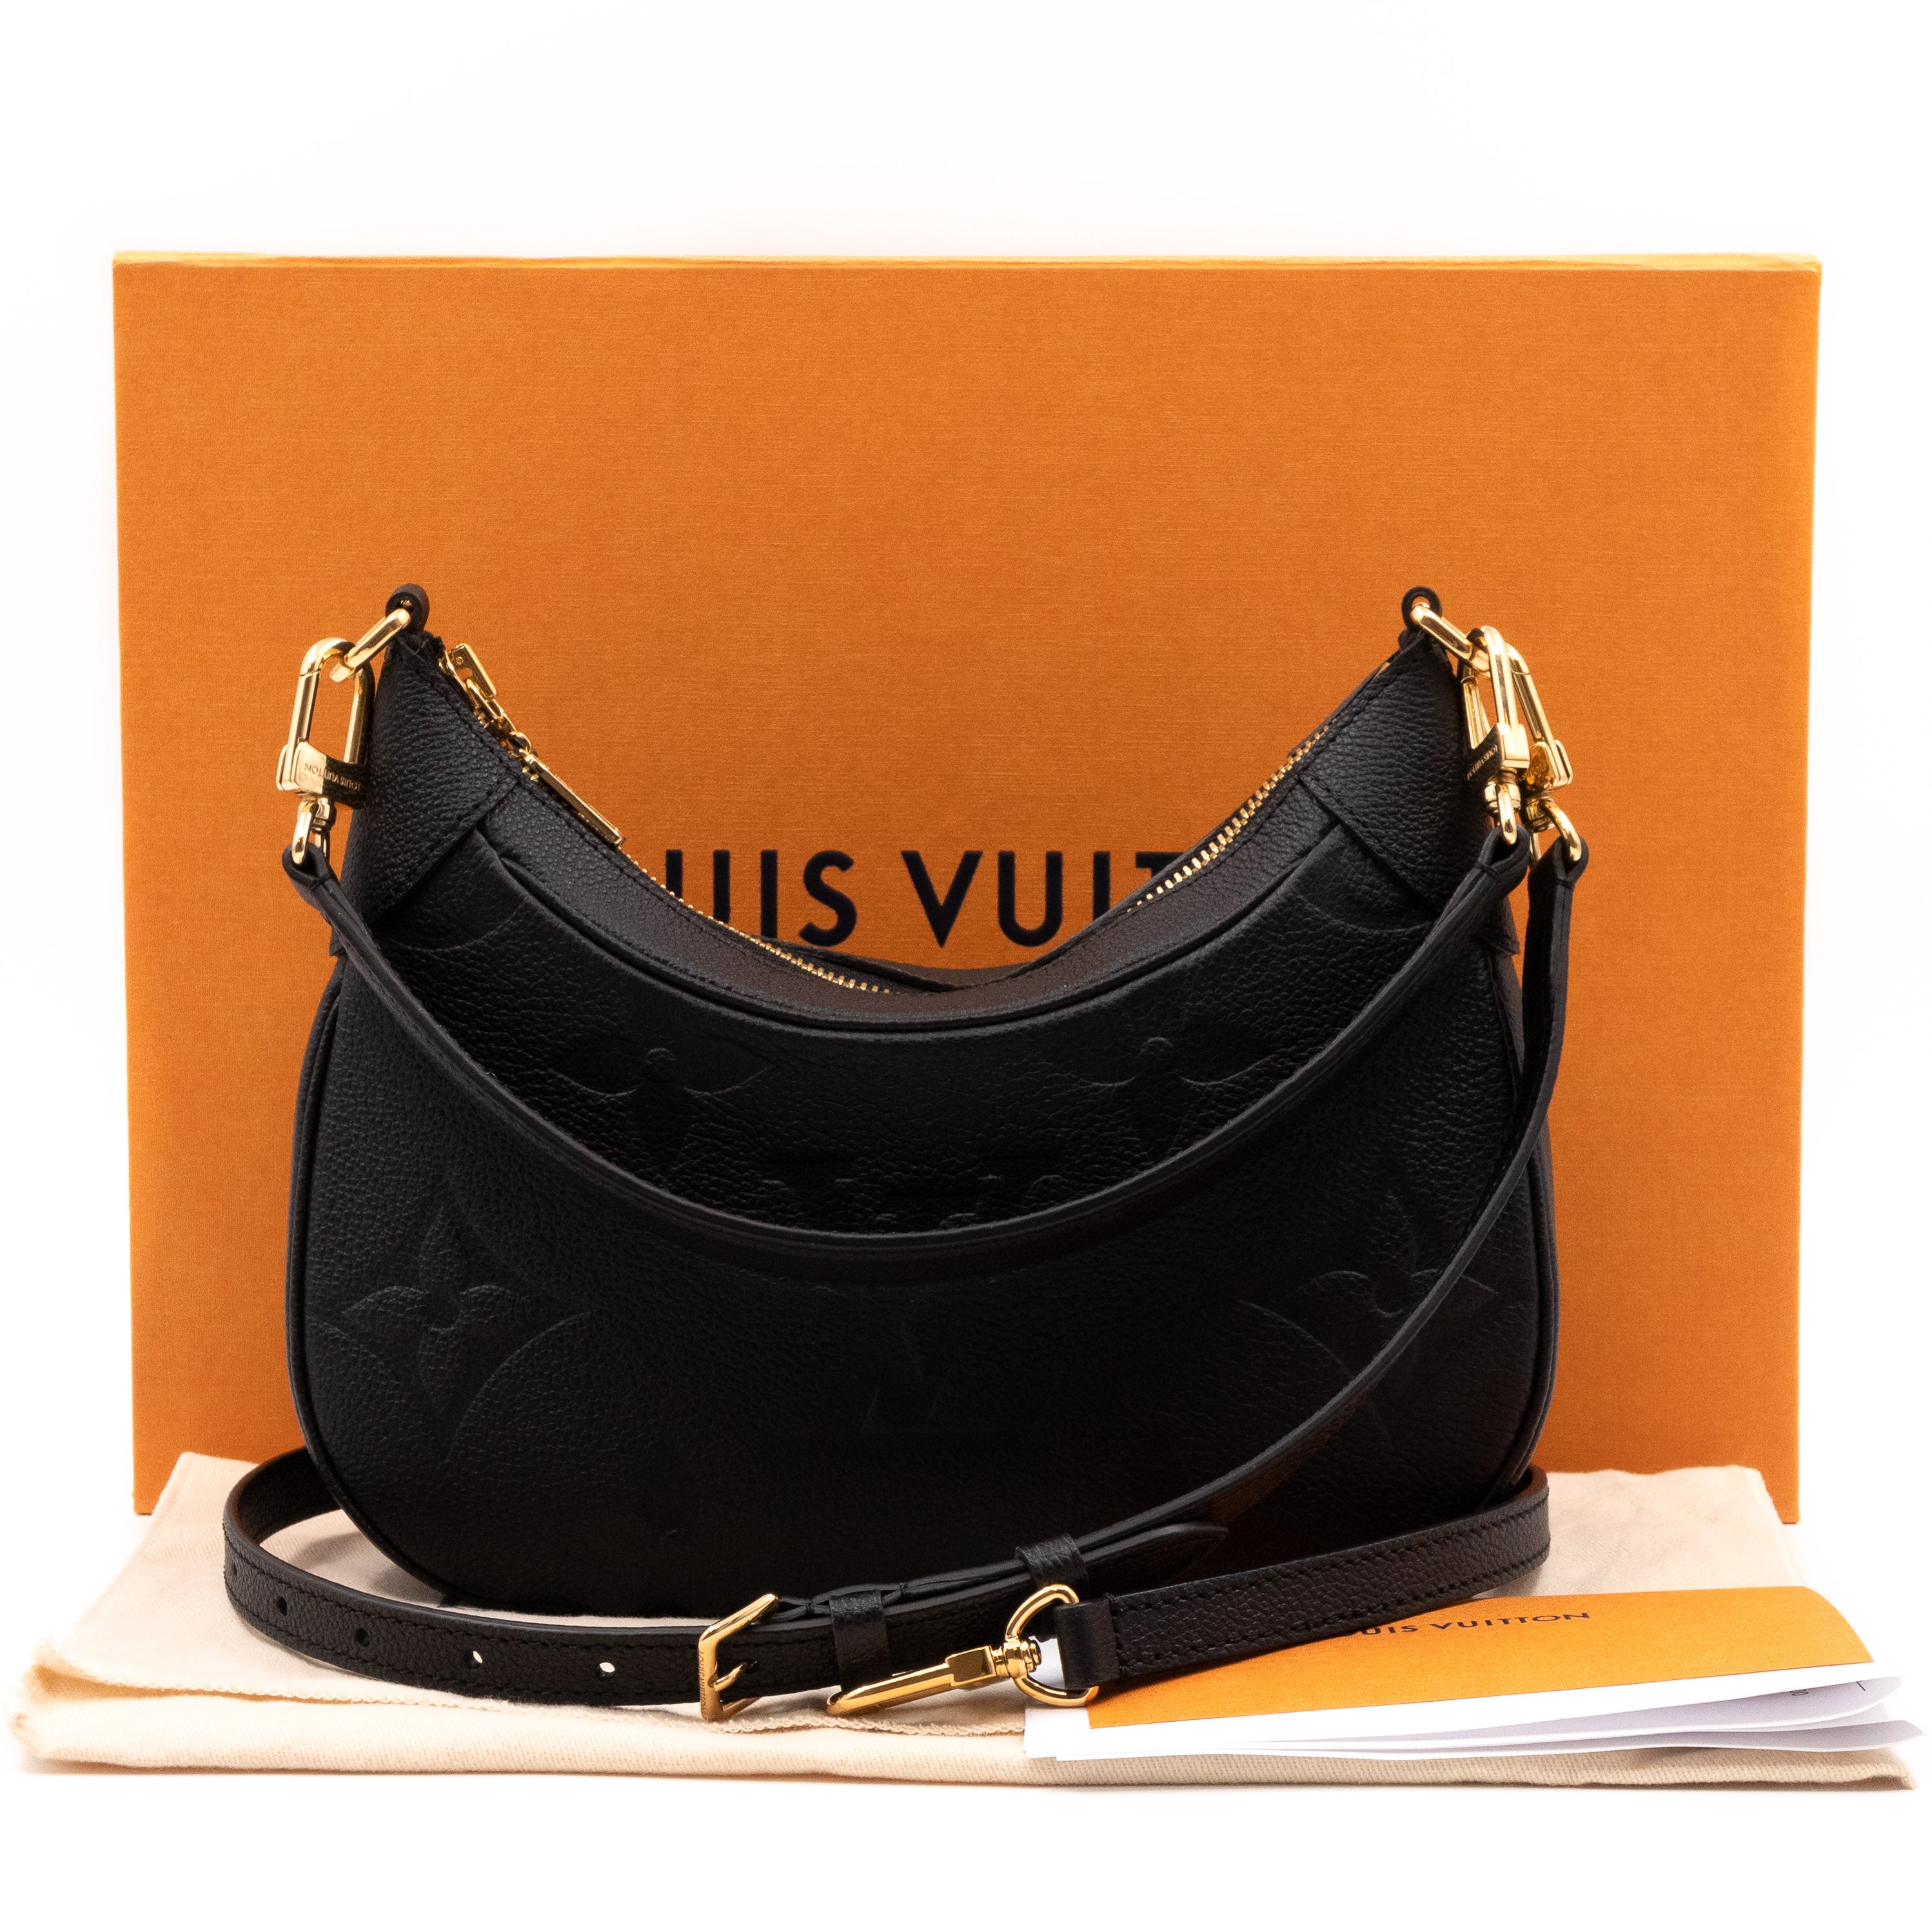 ② Prachtige authentieke Louis Vuitton bagatelle full set — Sacs